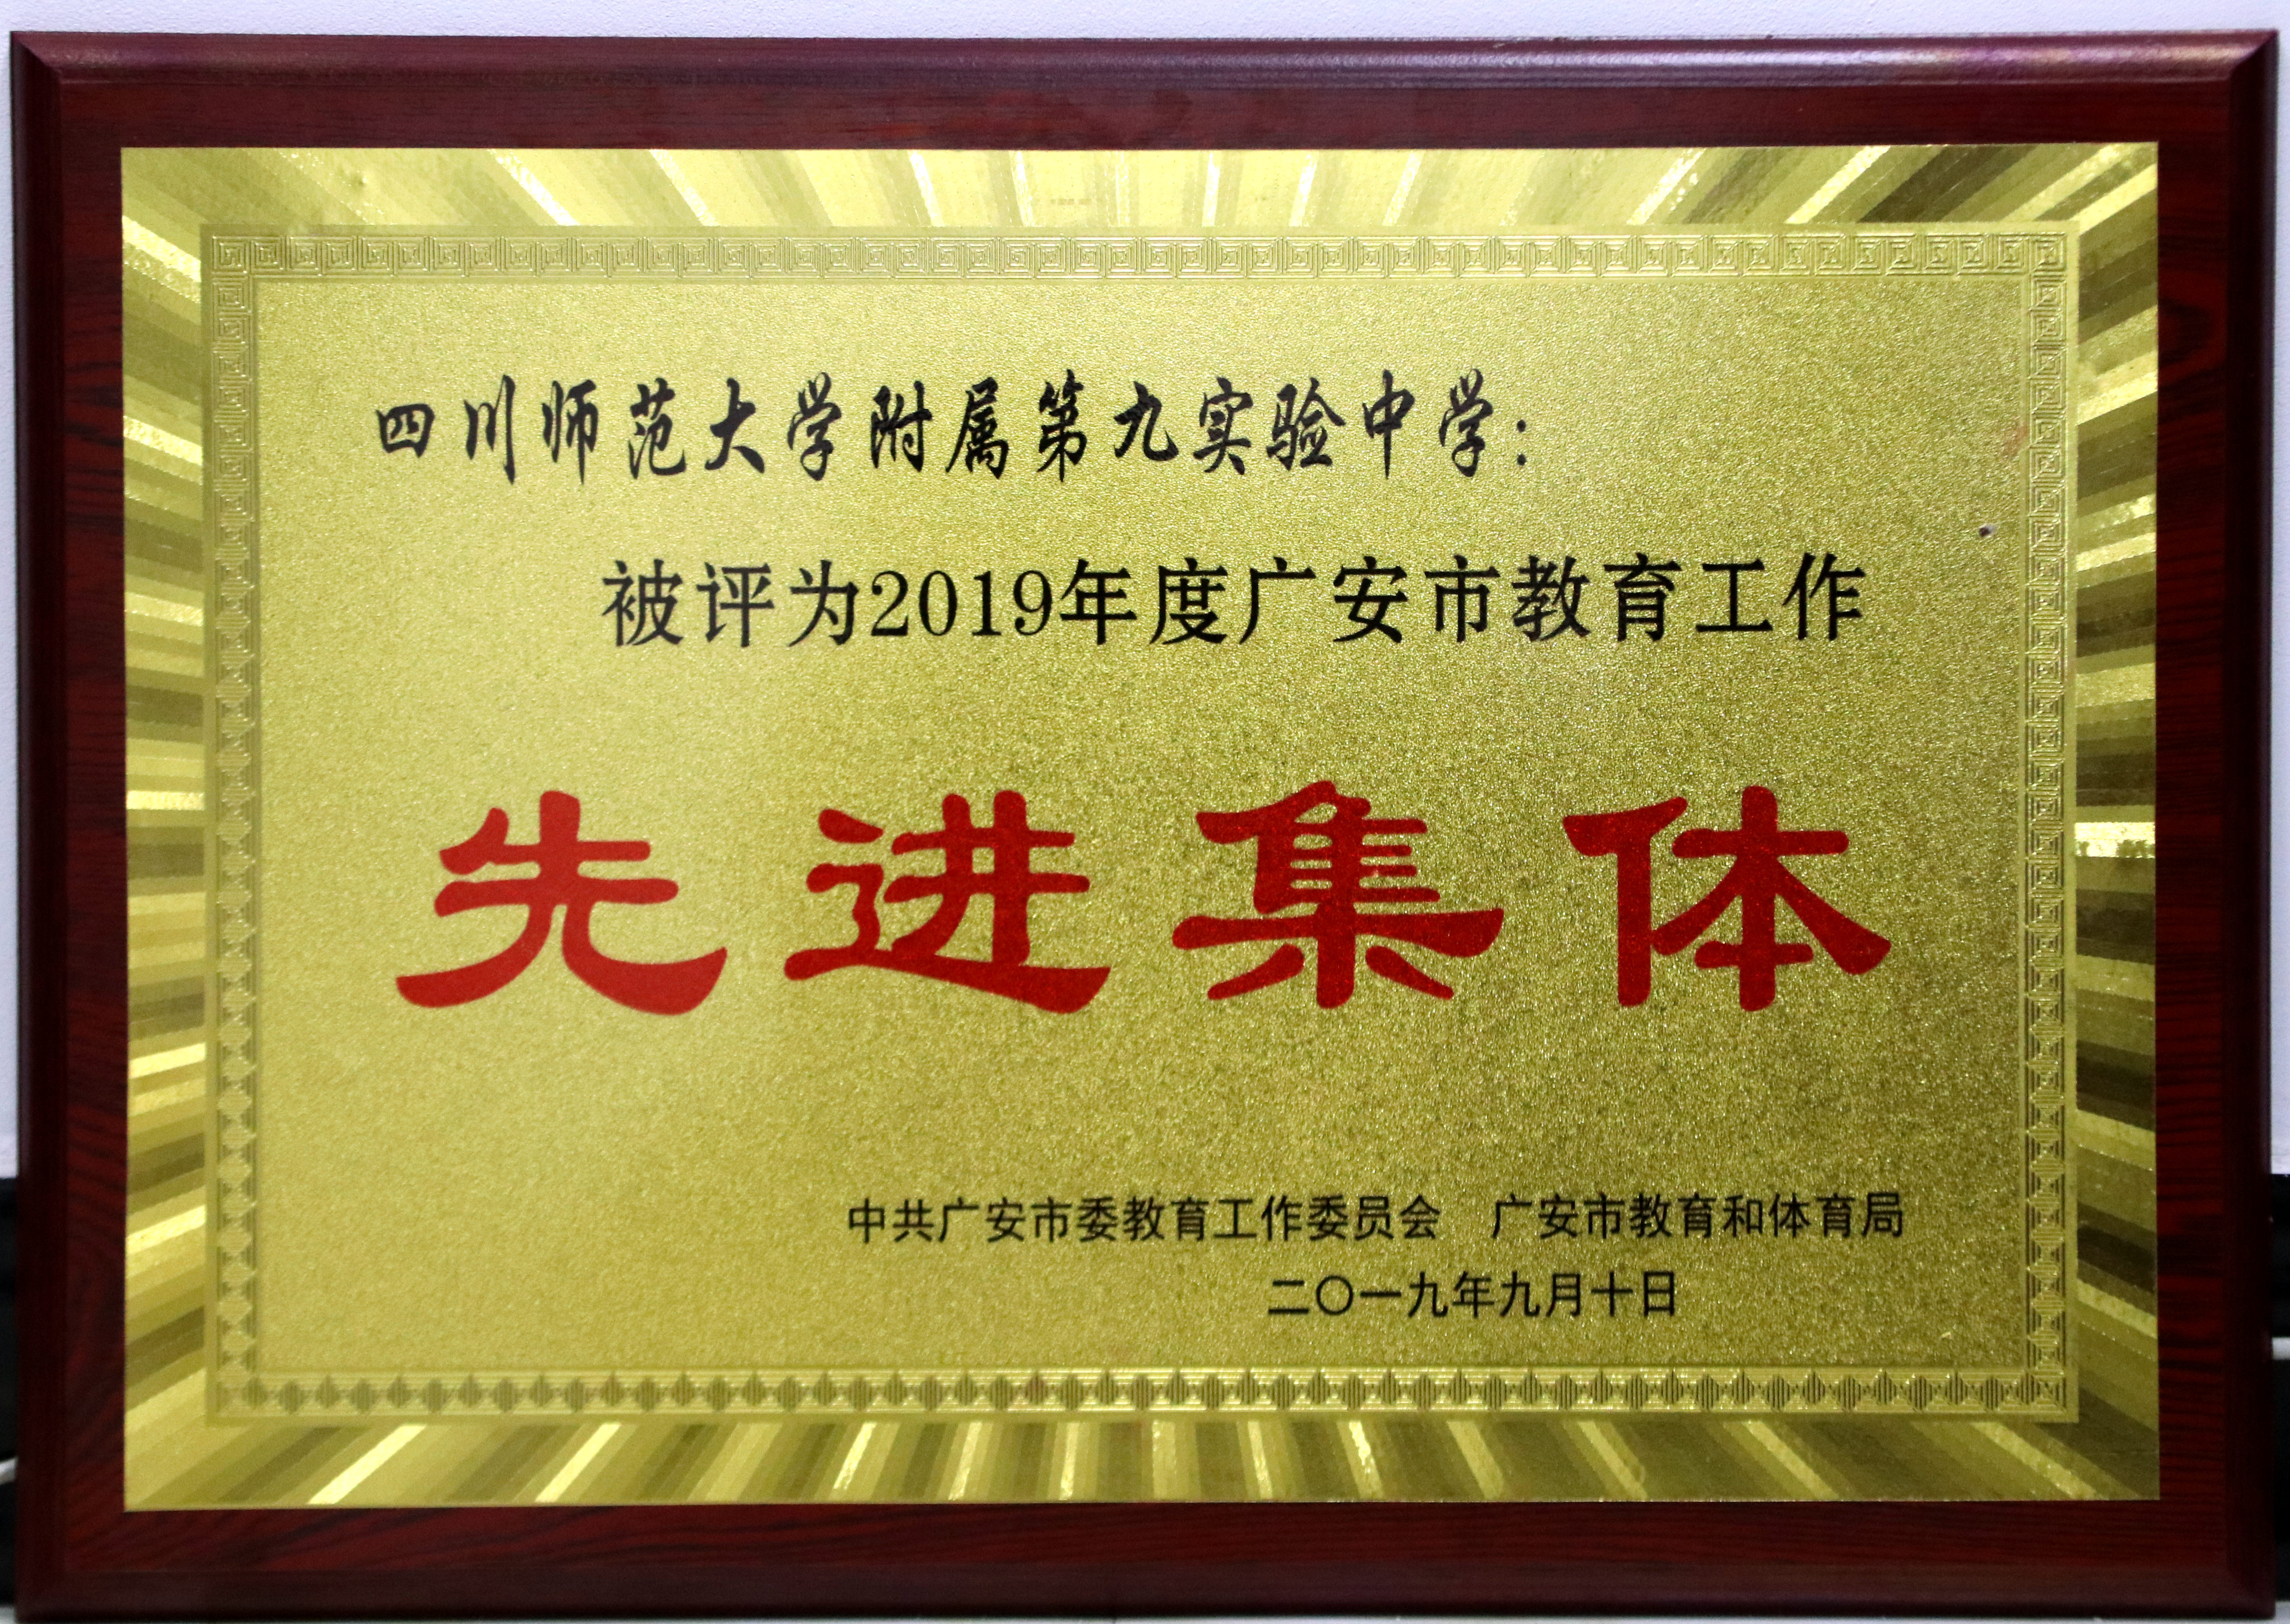 川师大九中被授予广安市教育工作先进集体称号